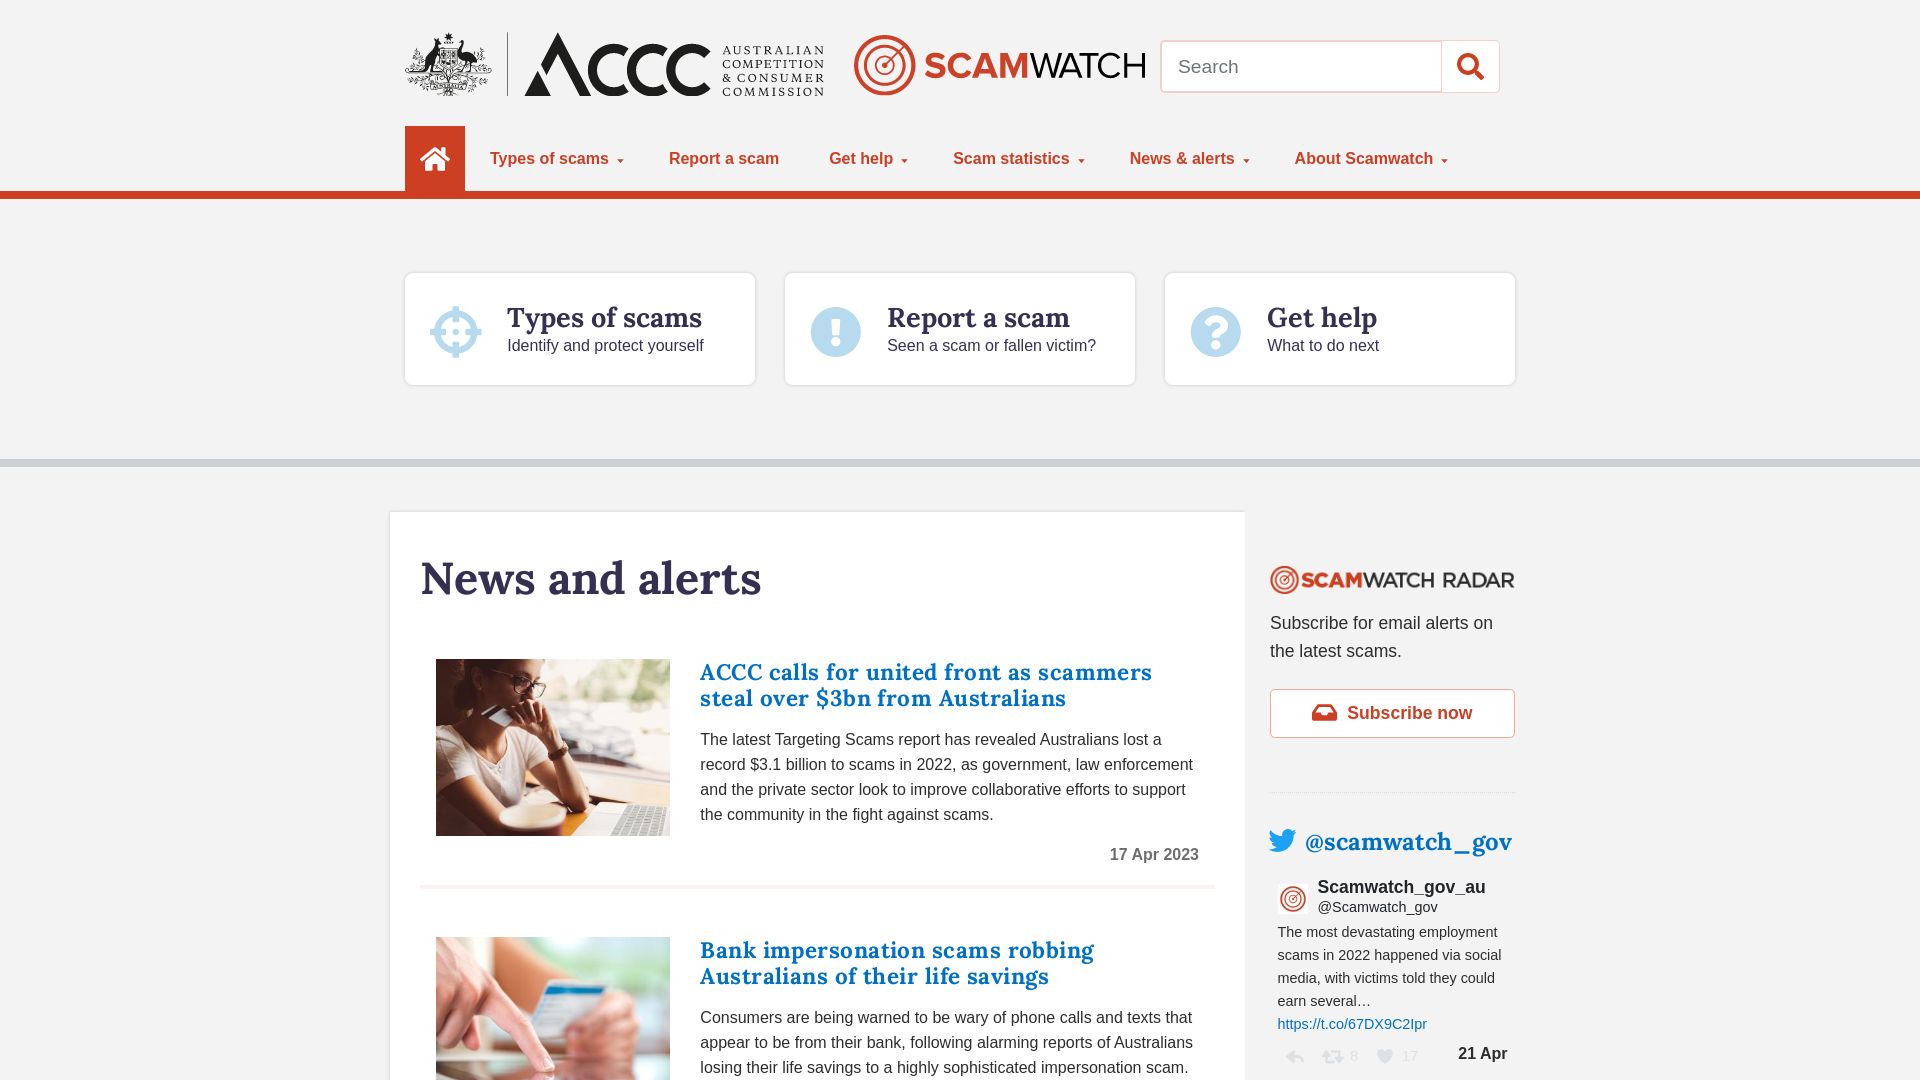 Stato del sito web scamwatch.gov.au è   ONLINE